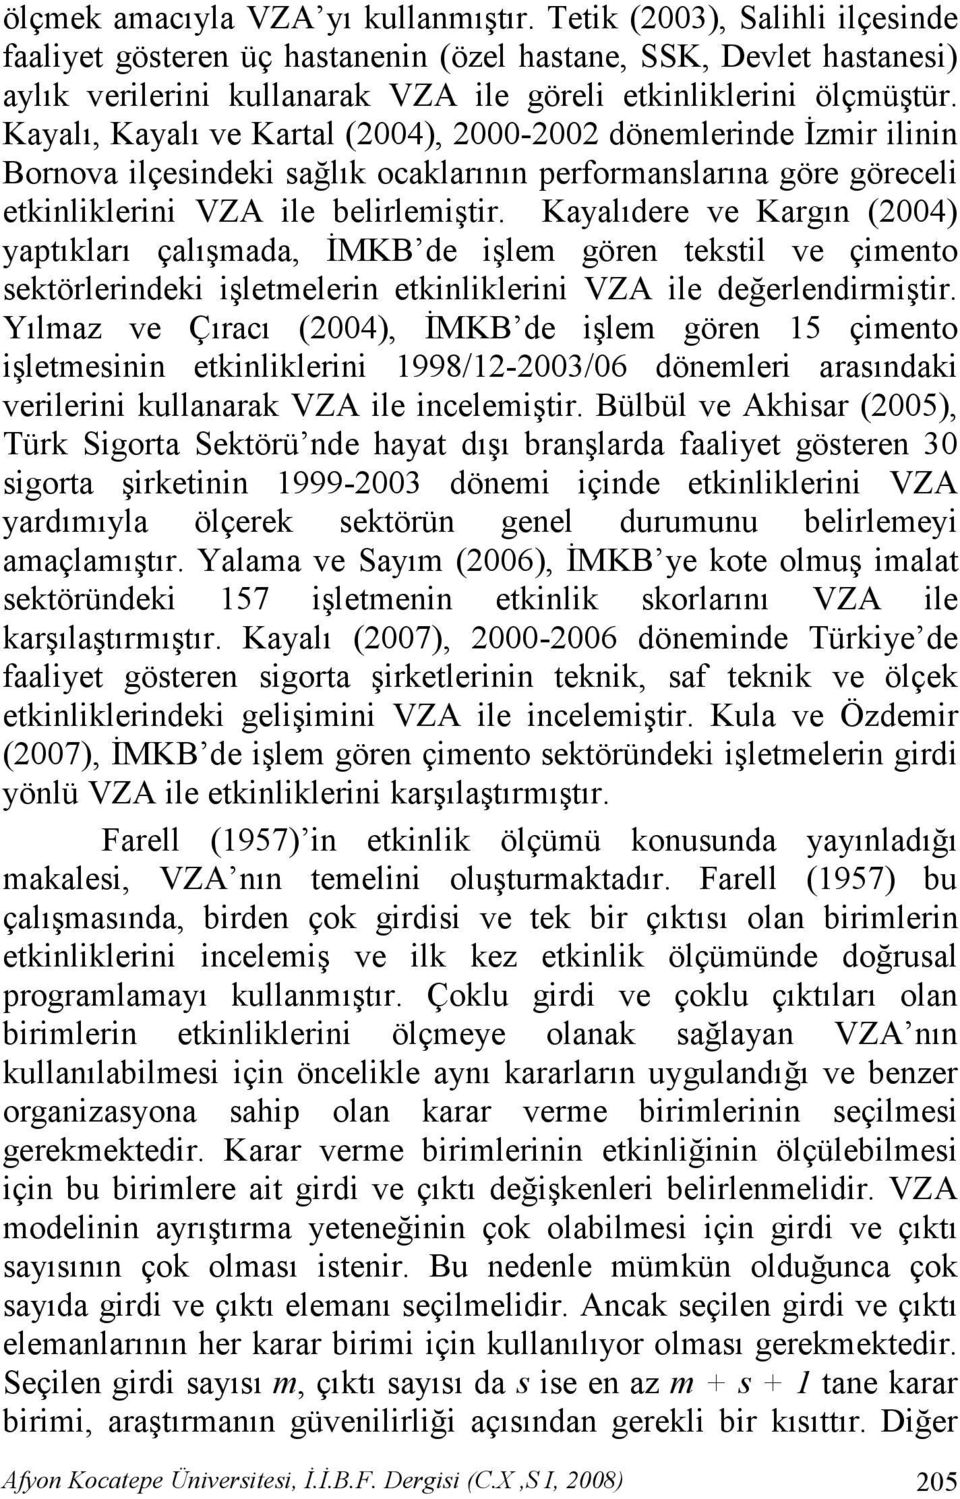 Kayalı, Kayalı ve Kartal (2004), 2000-2002 dönemlerinde Đzmir ilinin Bornova ilçesindeki sağlık ocaklarının performanslarına göre göreceli etkinliklerini VZA ile belirlemiştir.